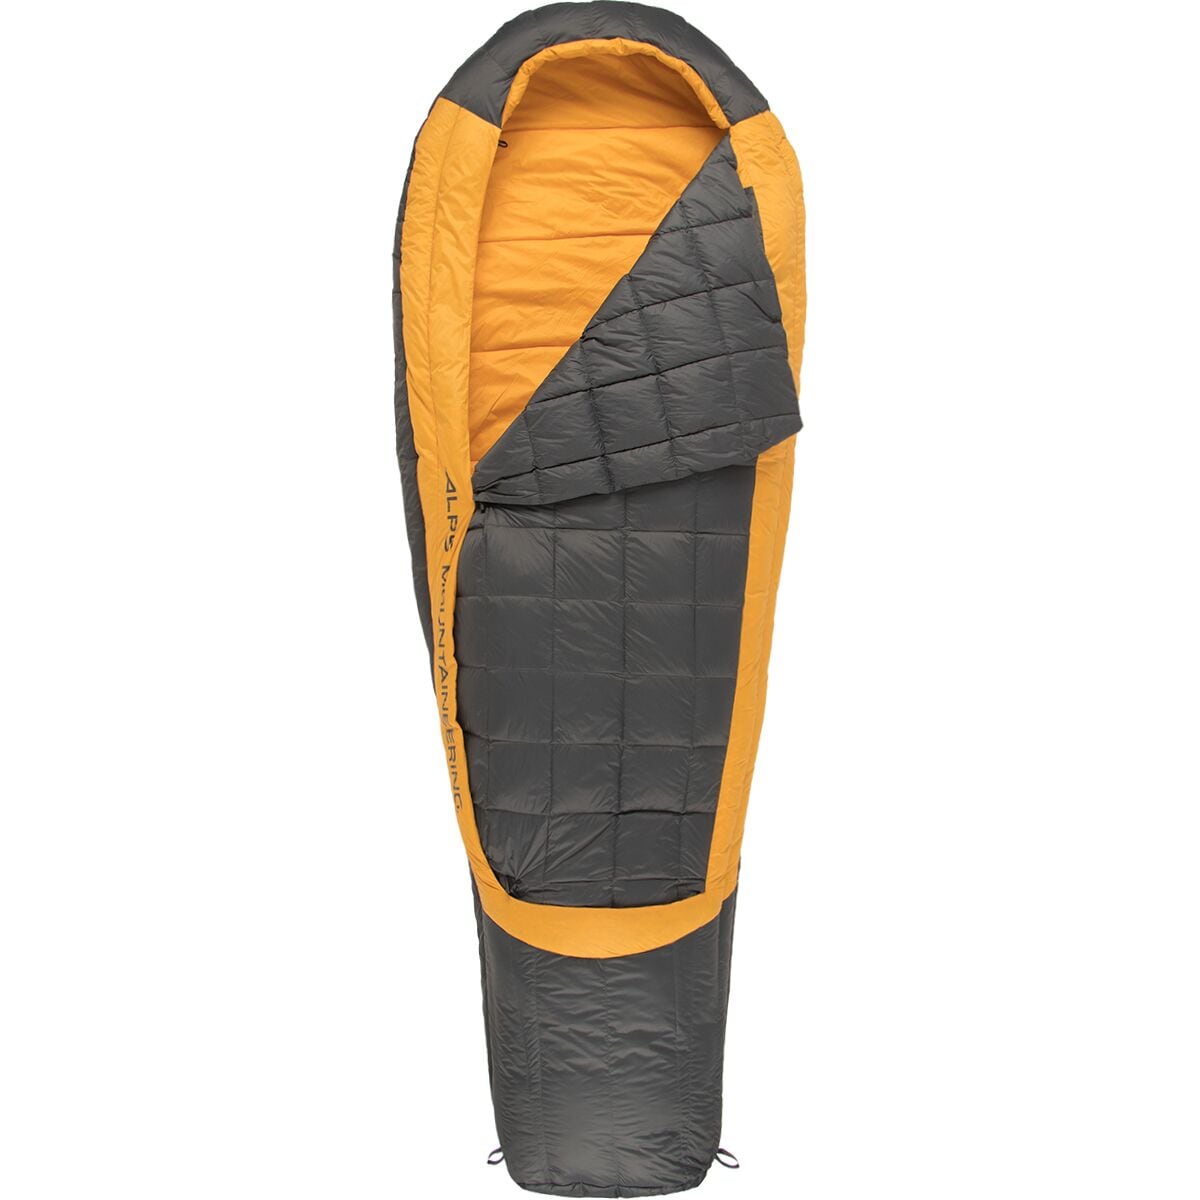 ALPS Mountaineering Dogwood + Sleeping Bag: 40F Synthetic